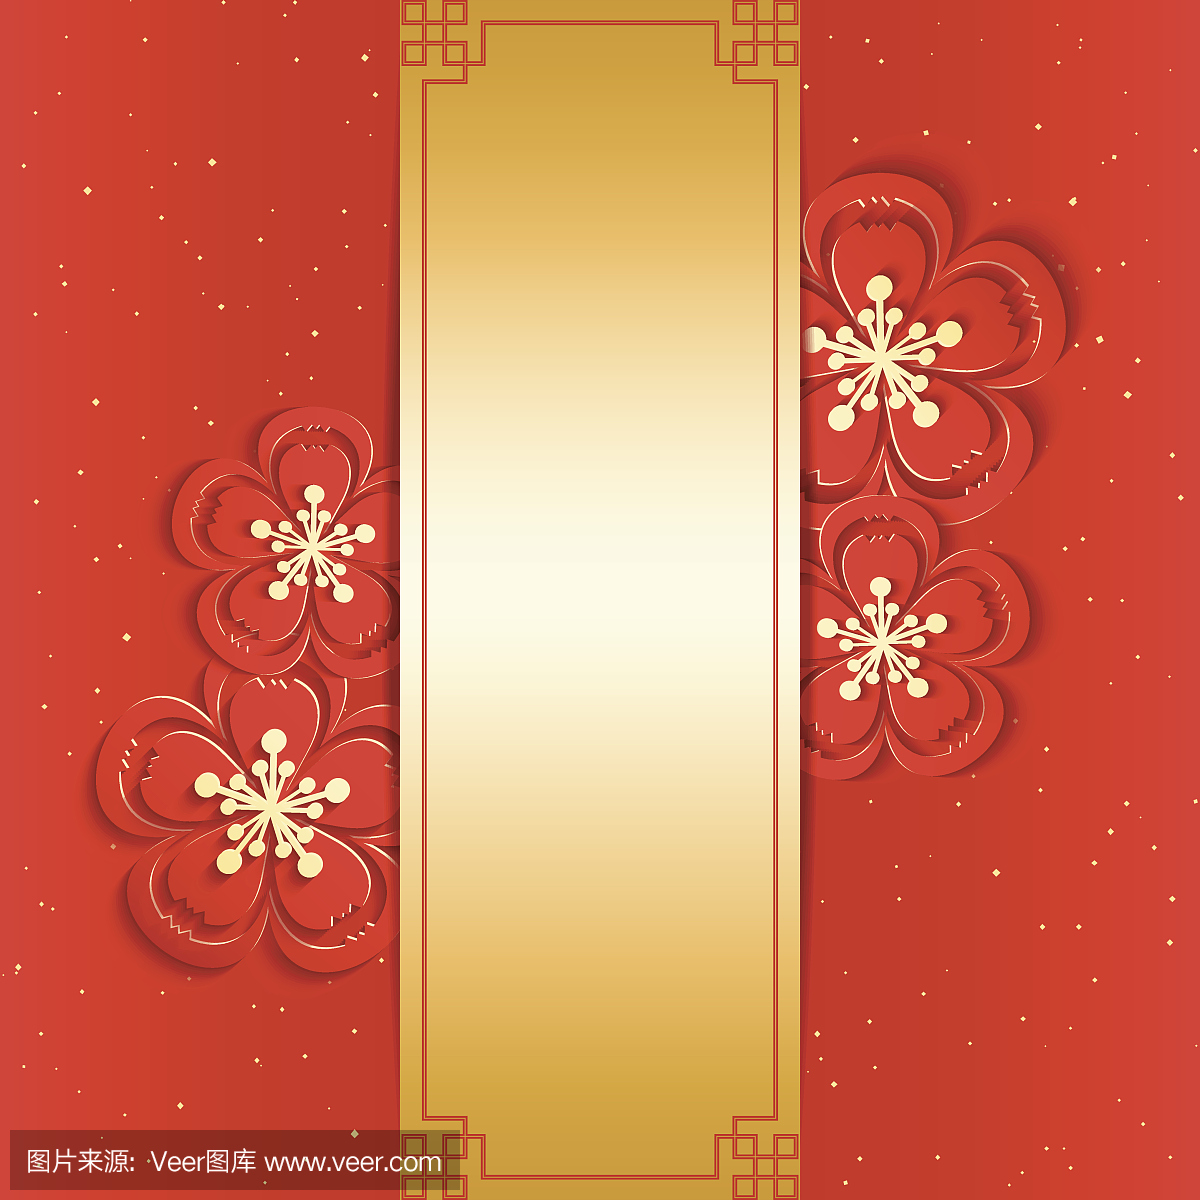 简单而美丽的中国新年贺卡